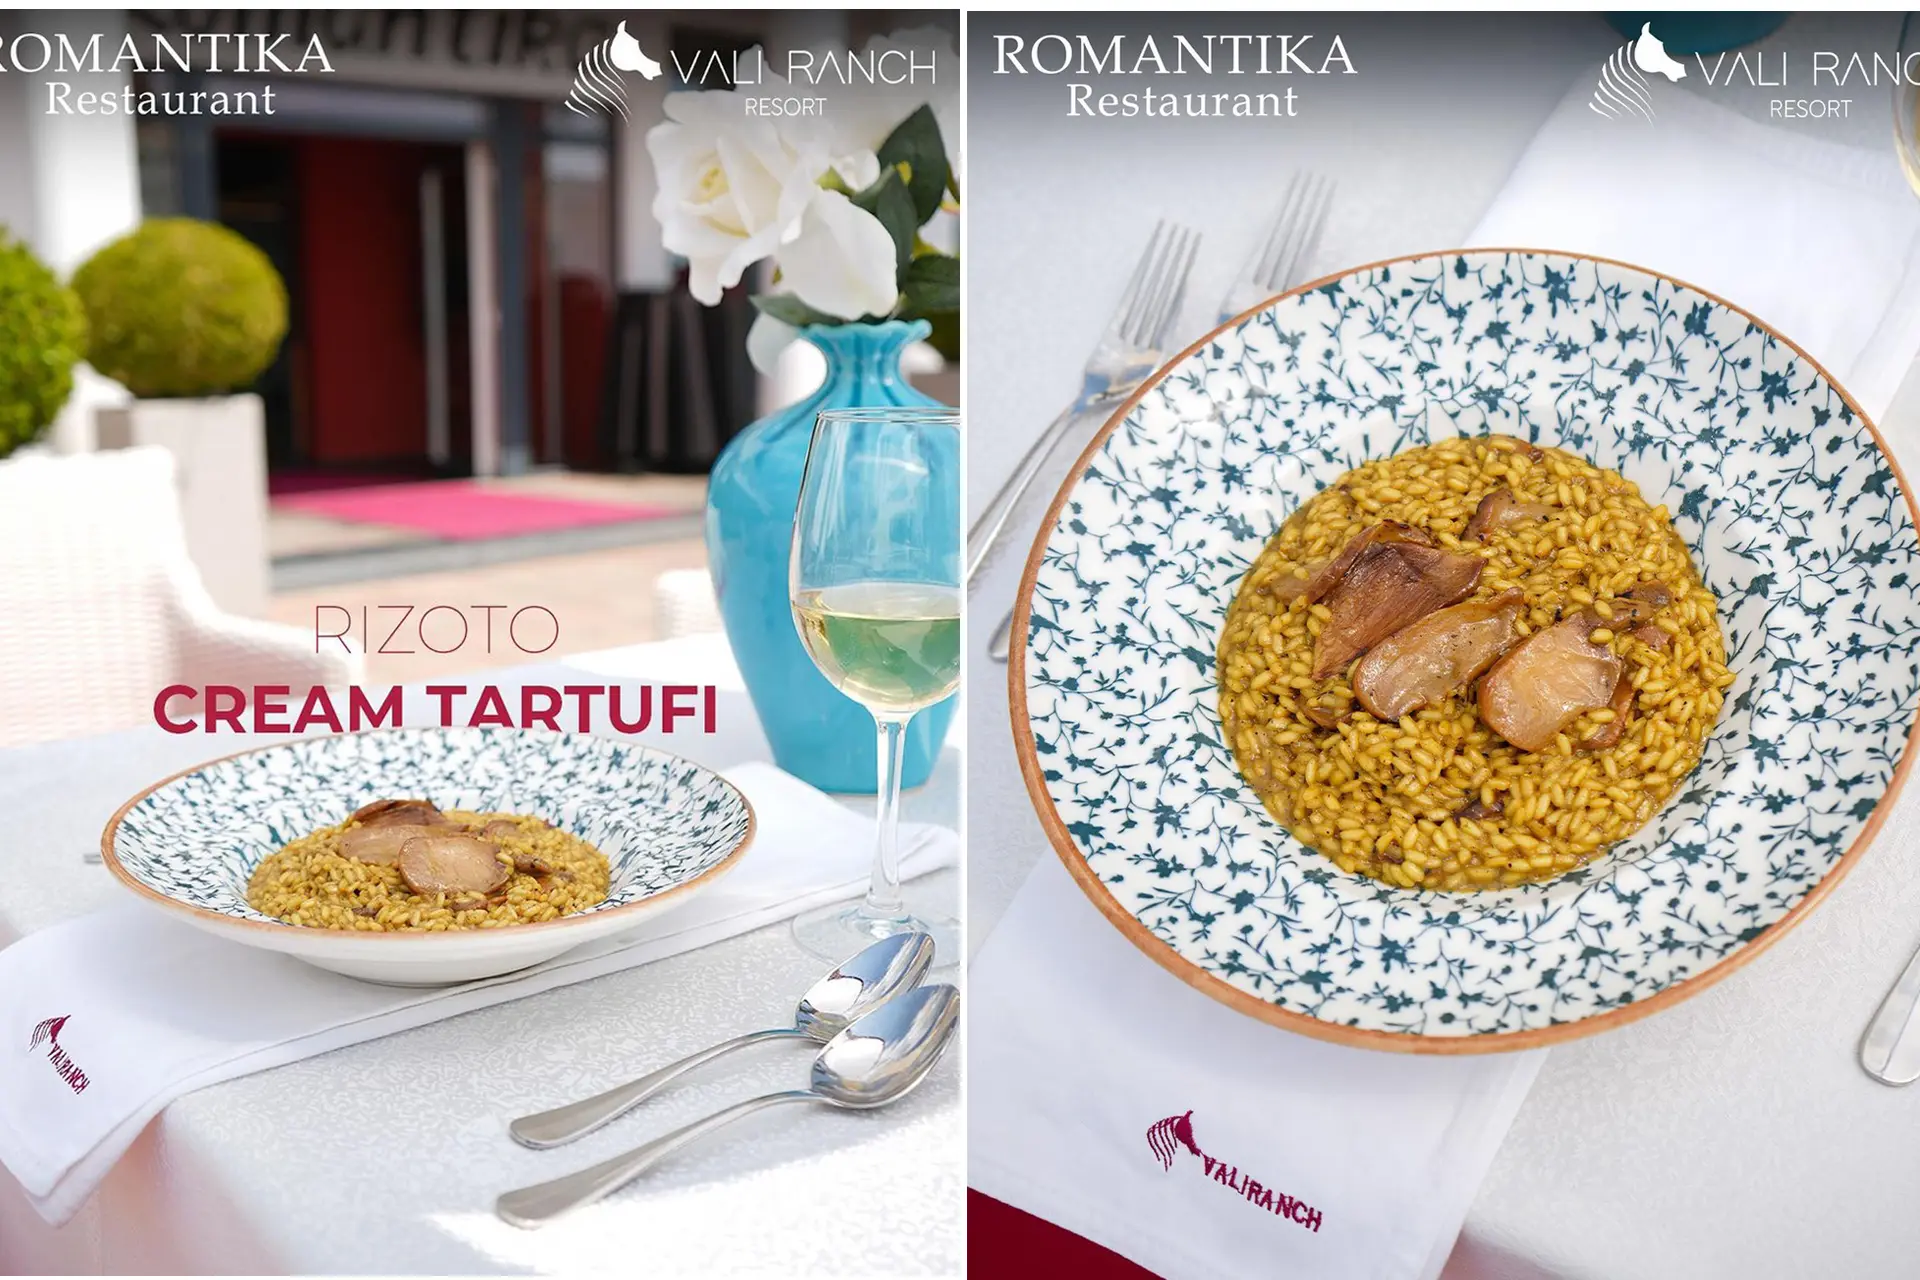 Shija më e re në Restaurant Romantika   Rizoto Cream Tartufi